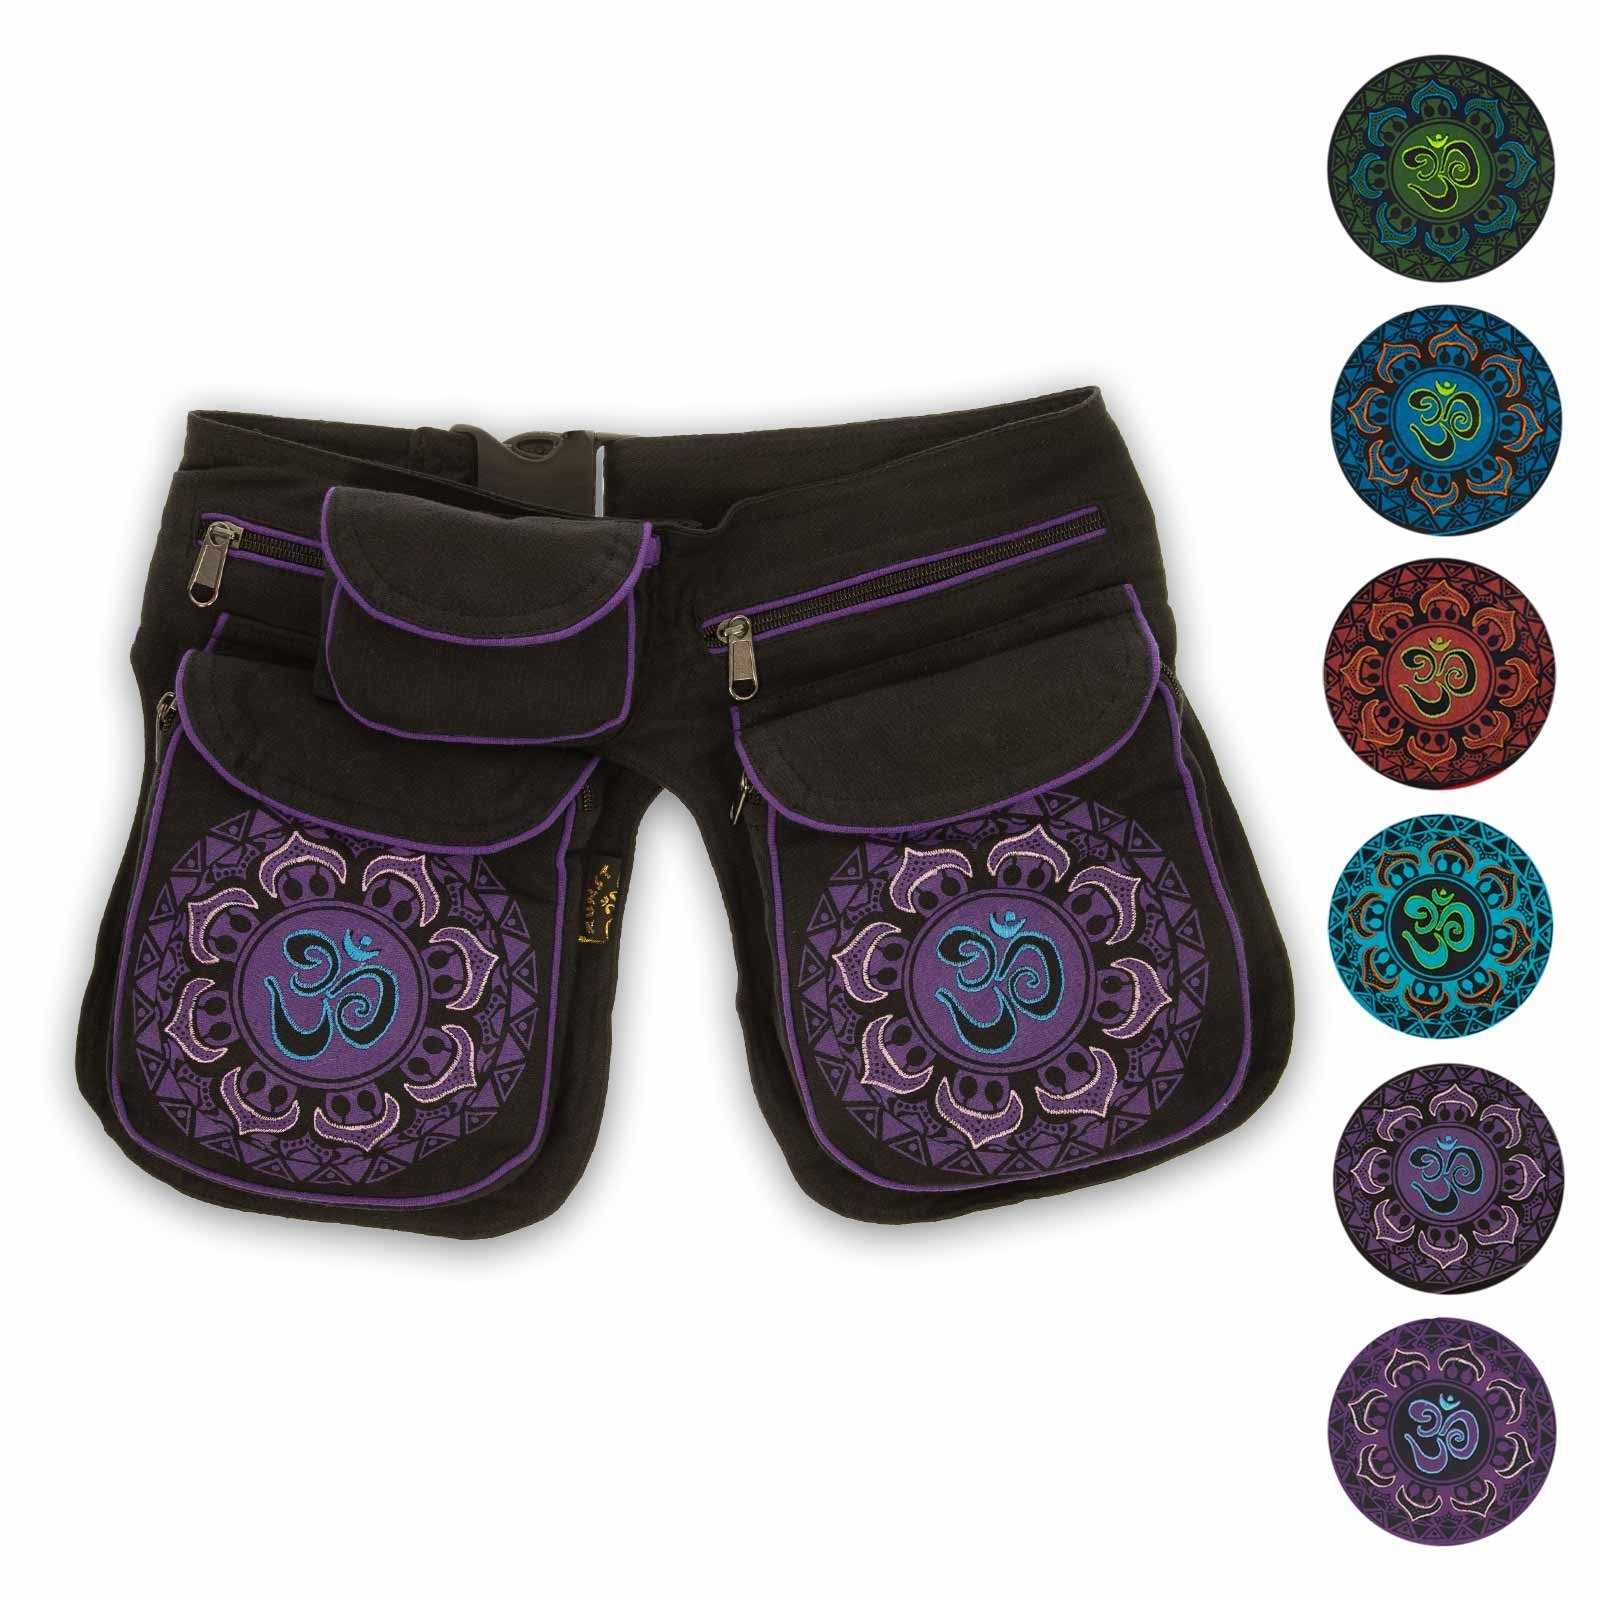 KUNST UND MAGIE Bauchtasche OM Mandala Doppel Bauchtasche Hüfttasche Mandala Gürteltasche Sidebag Black Purple